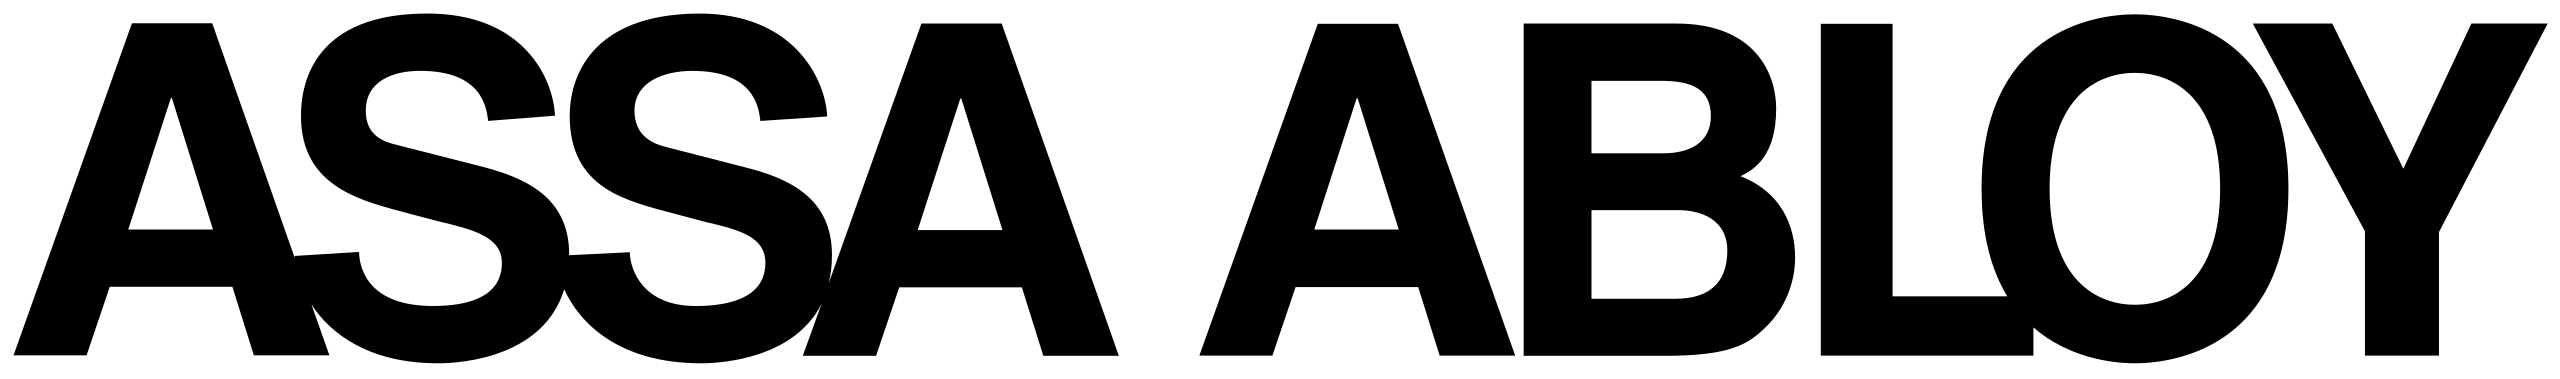 Logo marki ASSA ABLOY